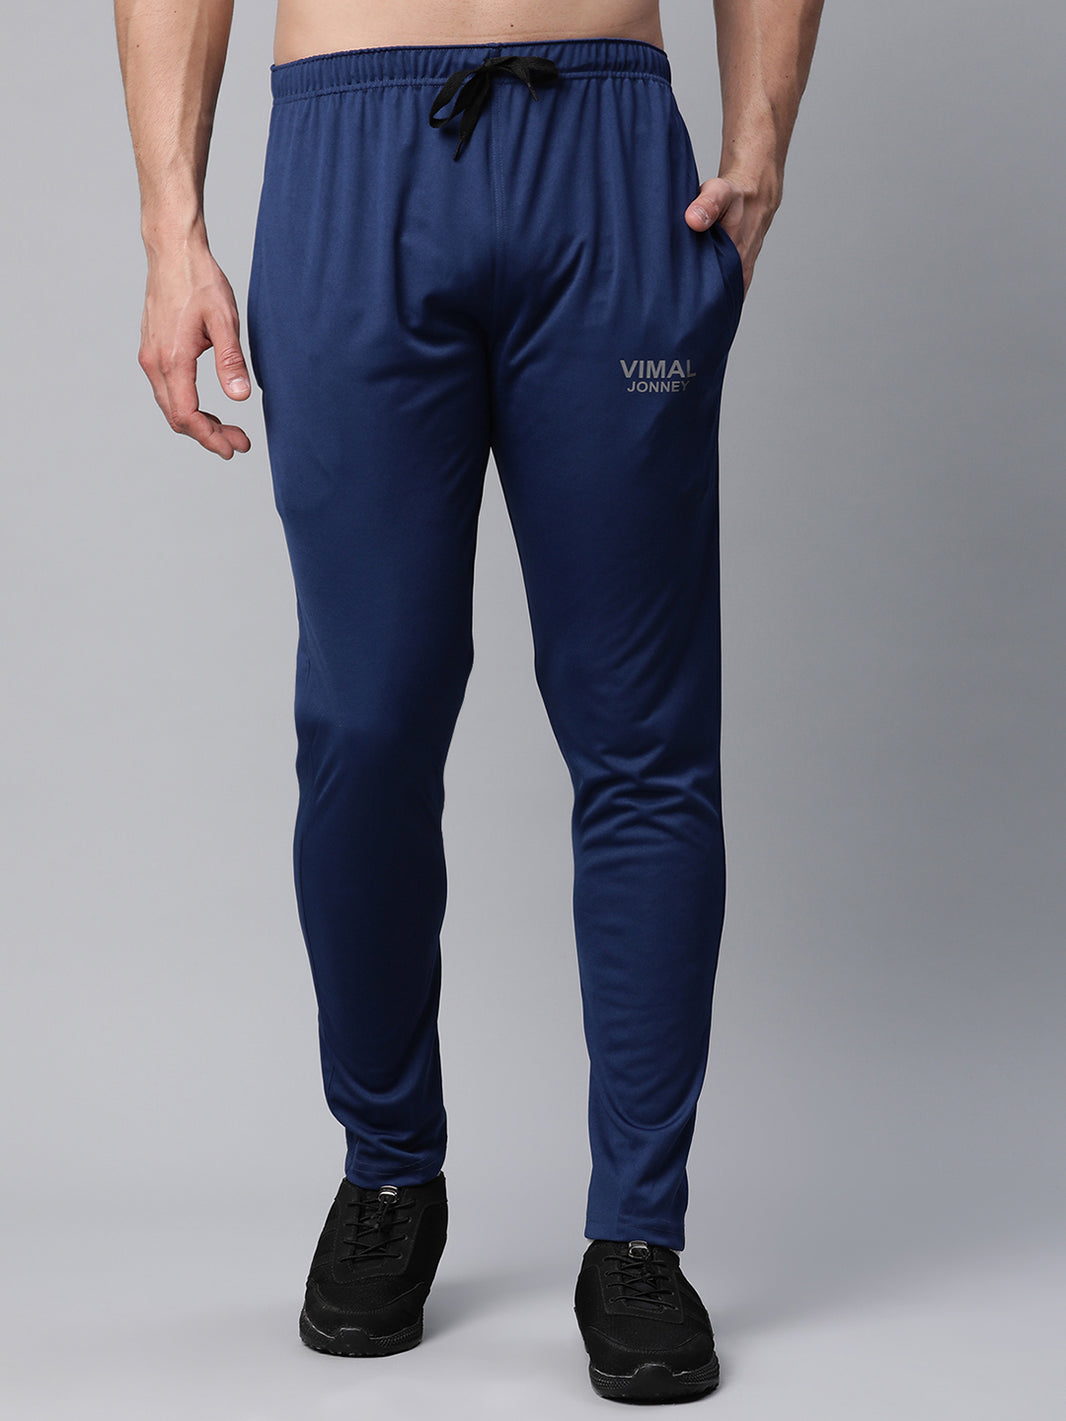 Vimal Jonney Dryfit Solid Blue Trackpant for Men